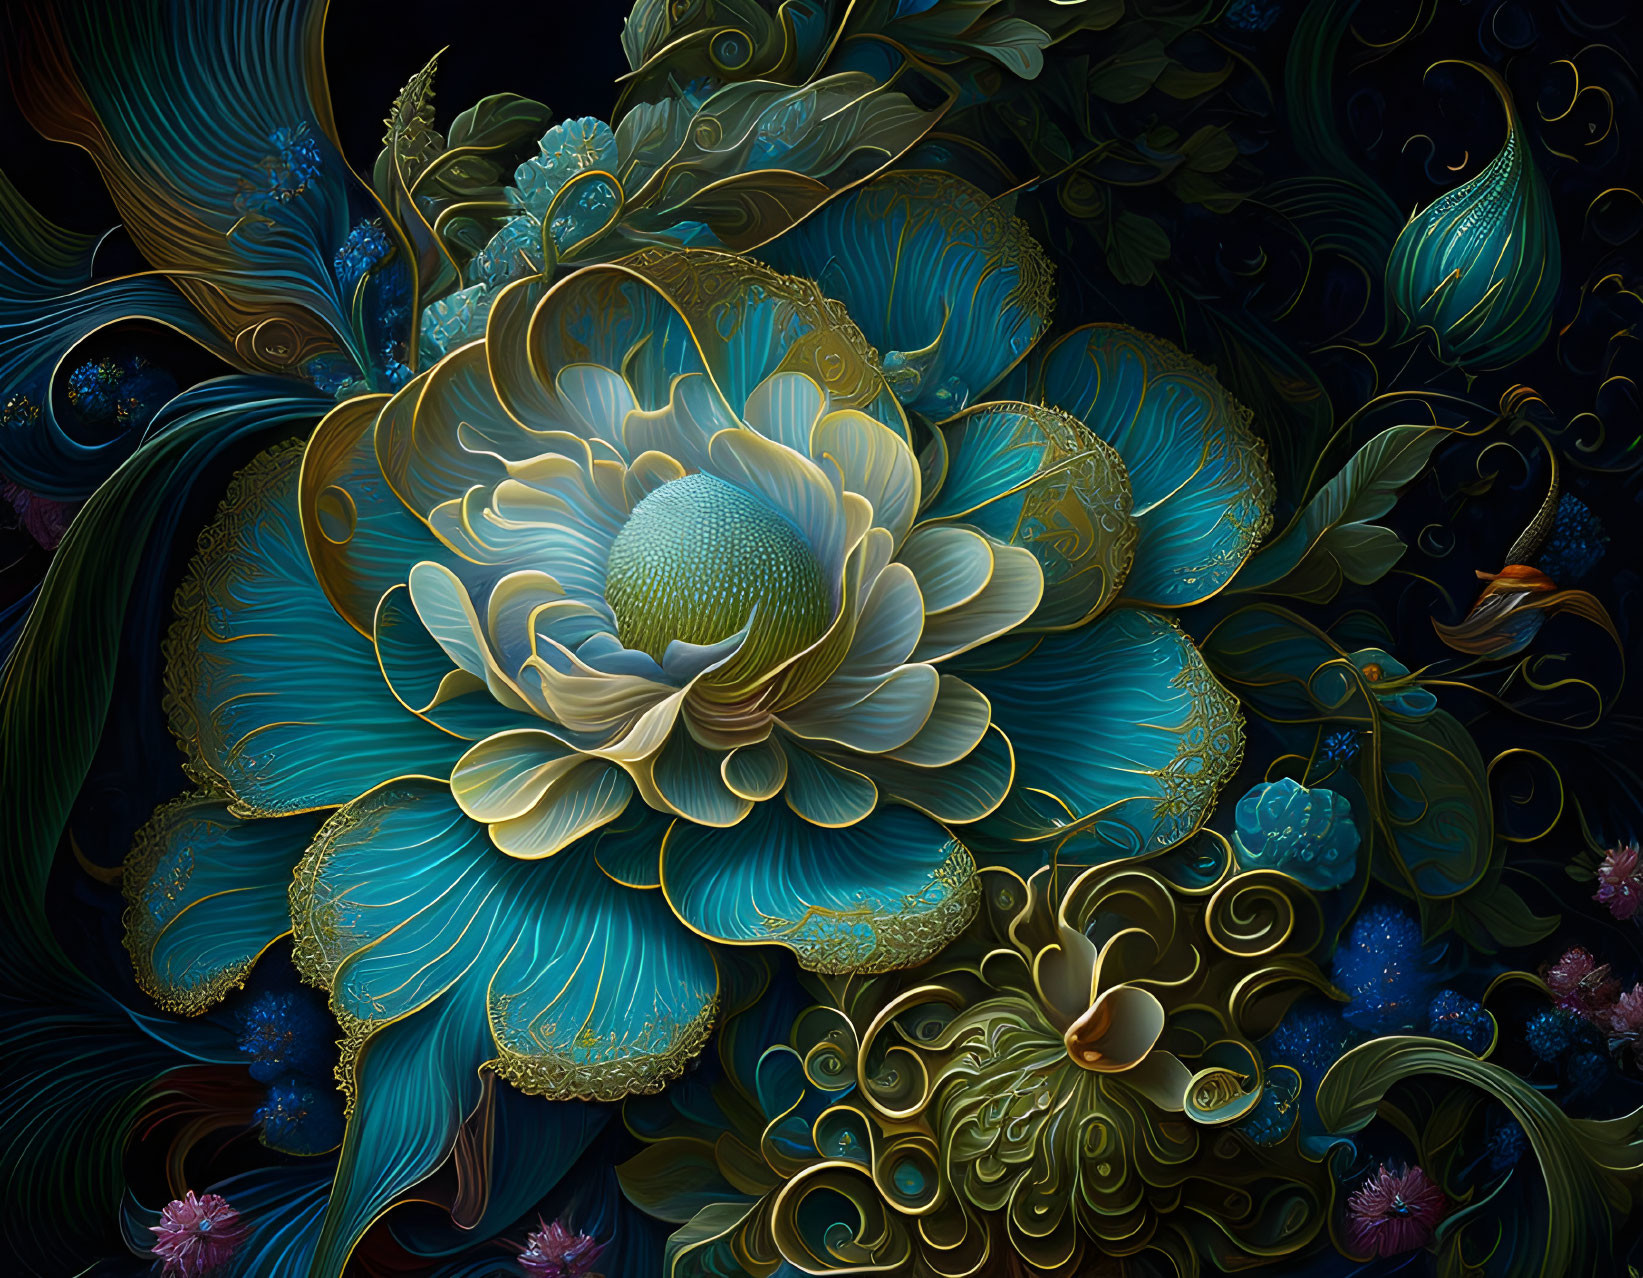 Detailed digital artwork of ornate blue and gold floral patterns on dark backdrop